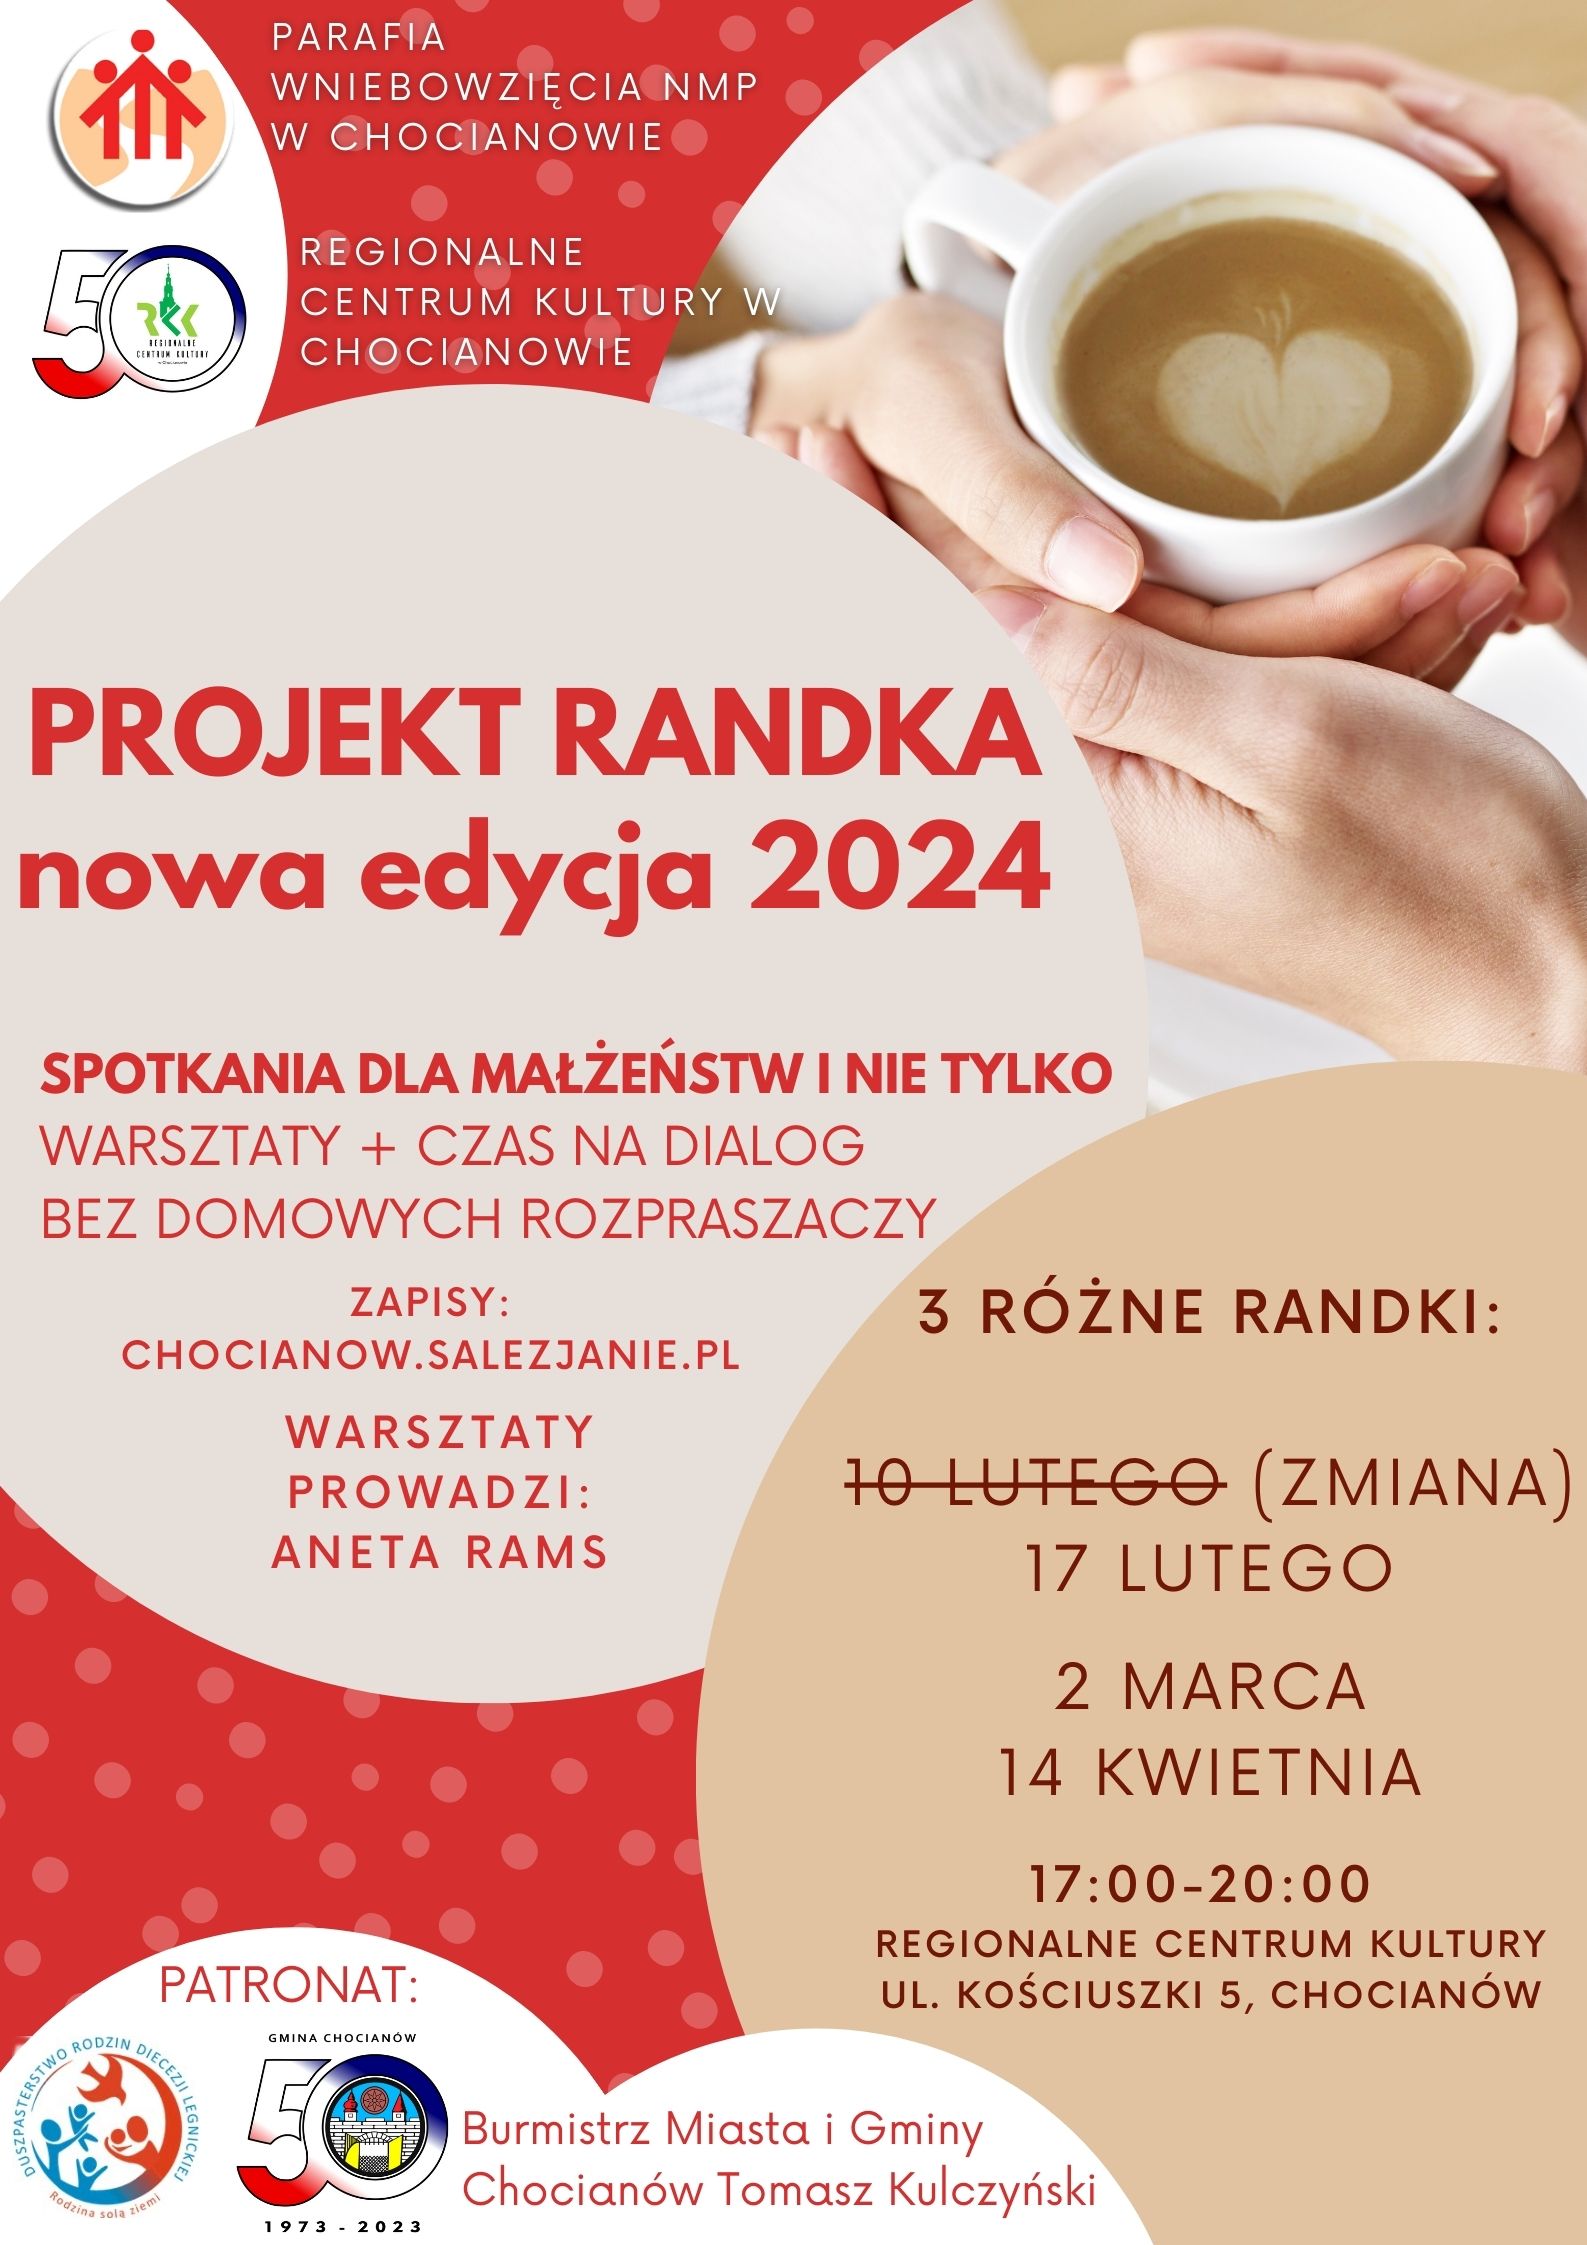 "Projekt RANDKA" w Chocianowie